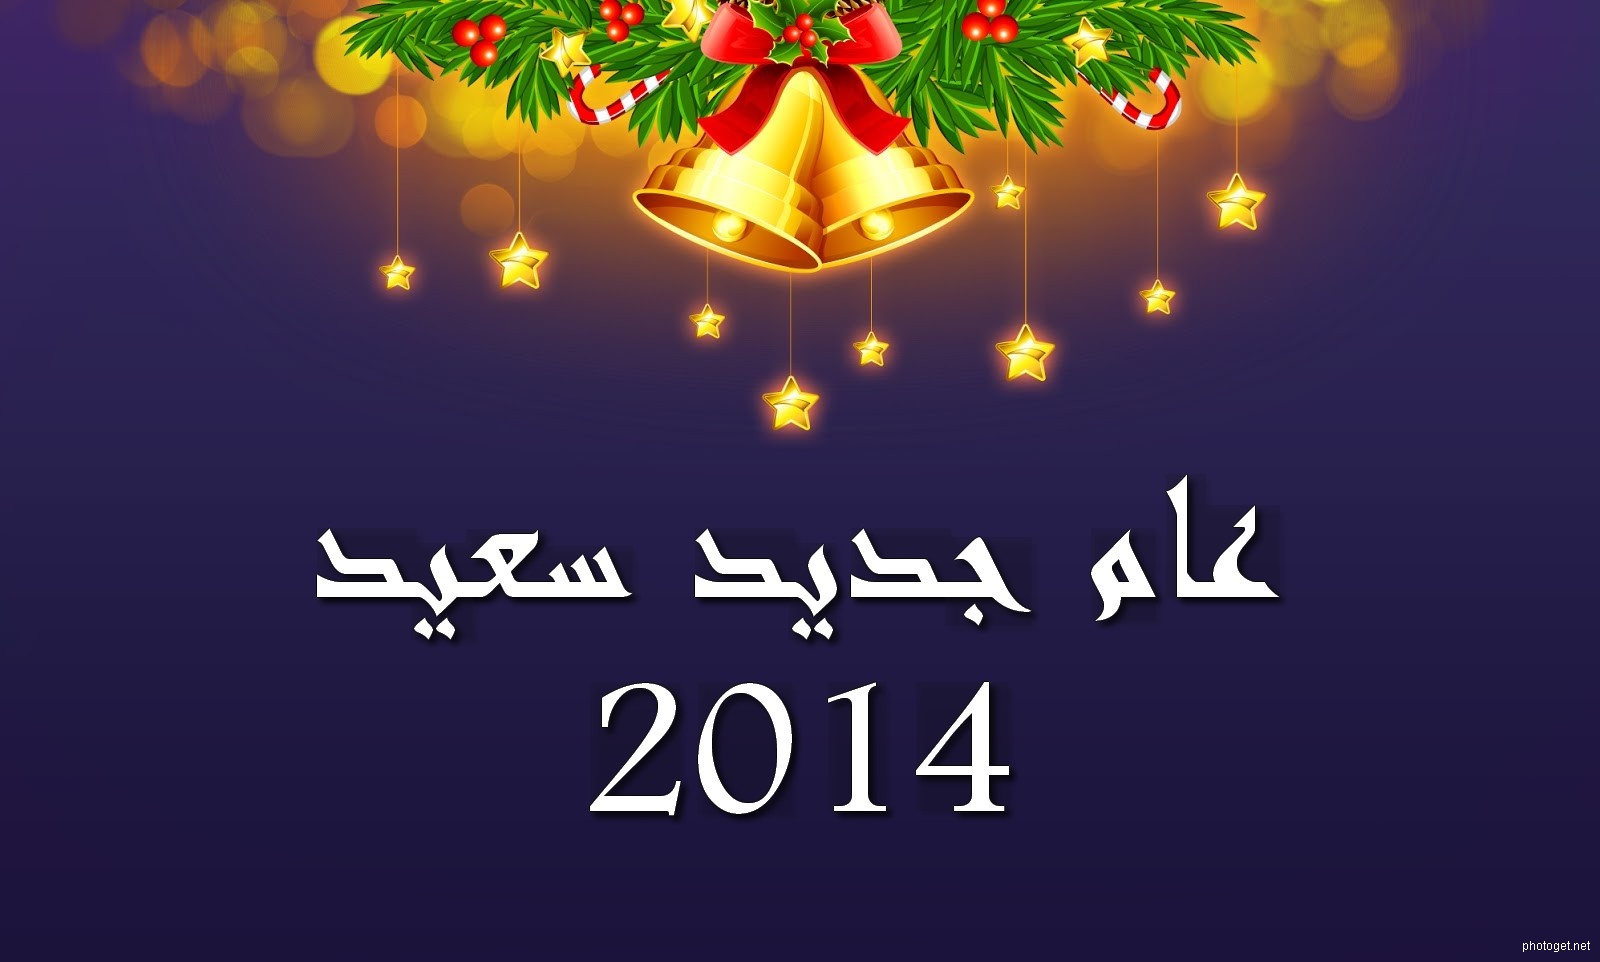 شتاوي وغناوي للعام الجديد 2014 , شتاوي وغناوي علم ع راس السنة 2014